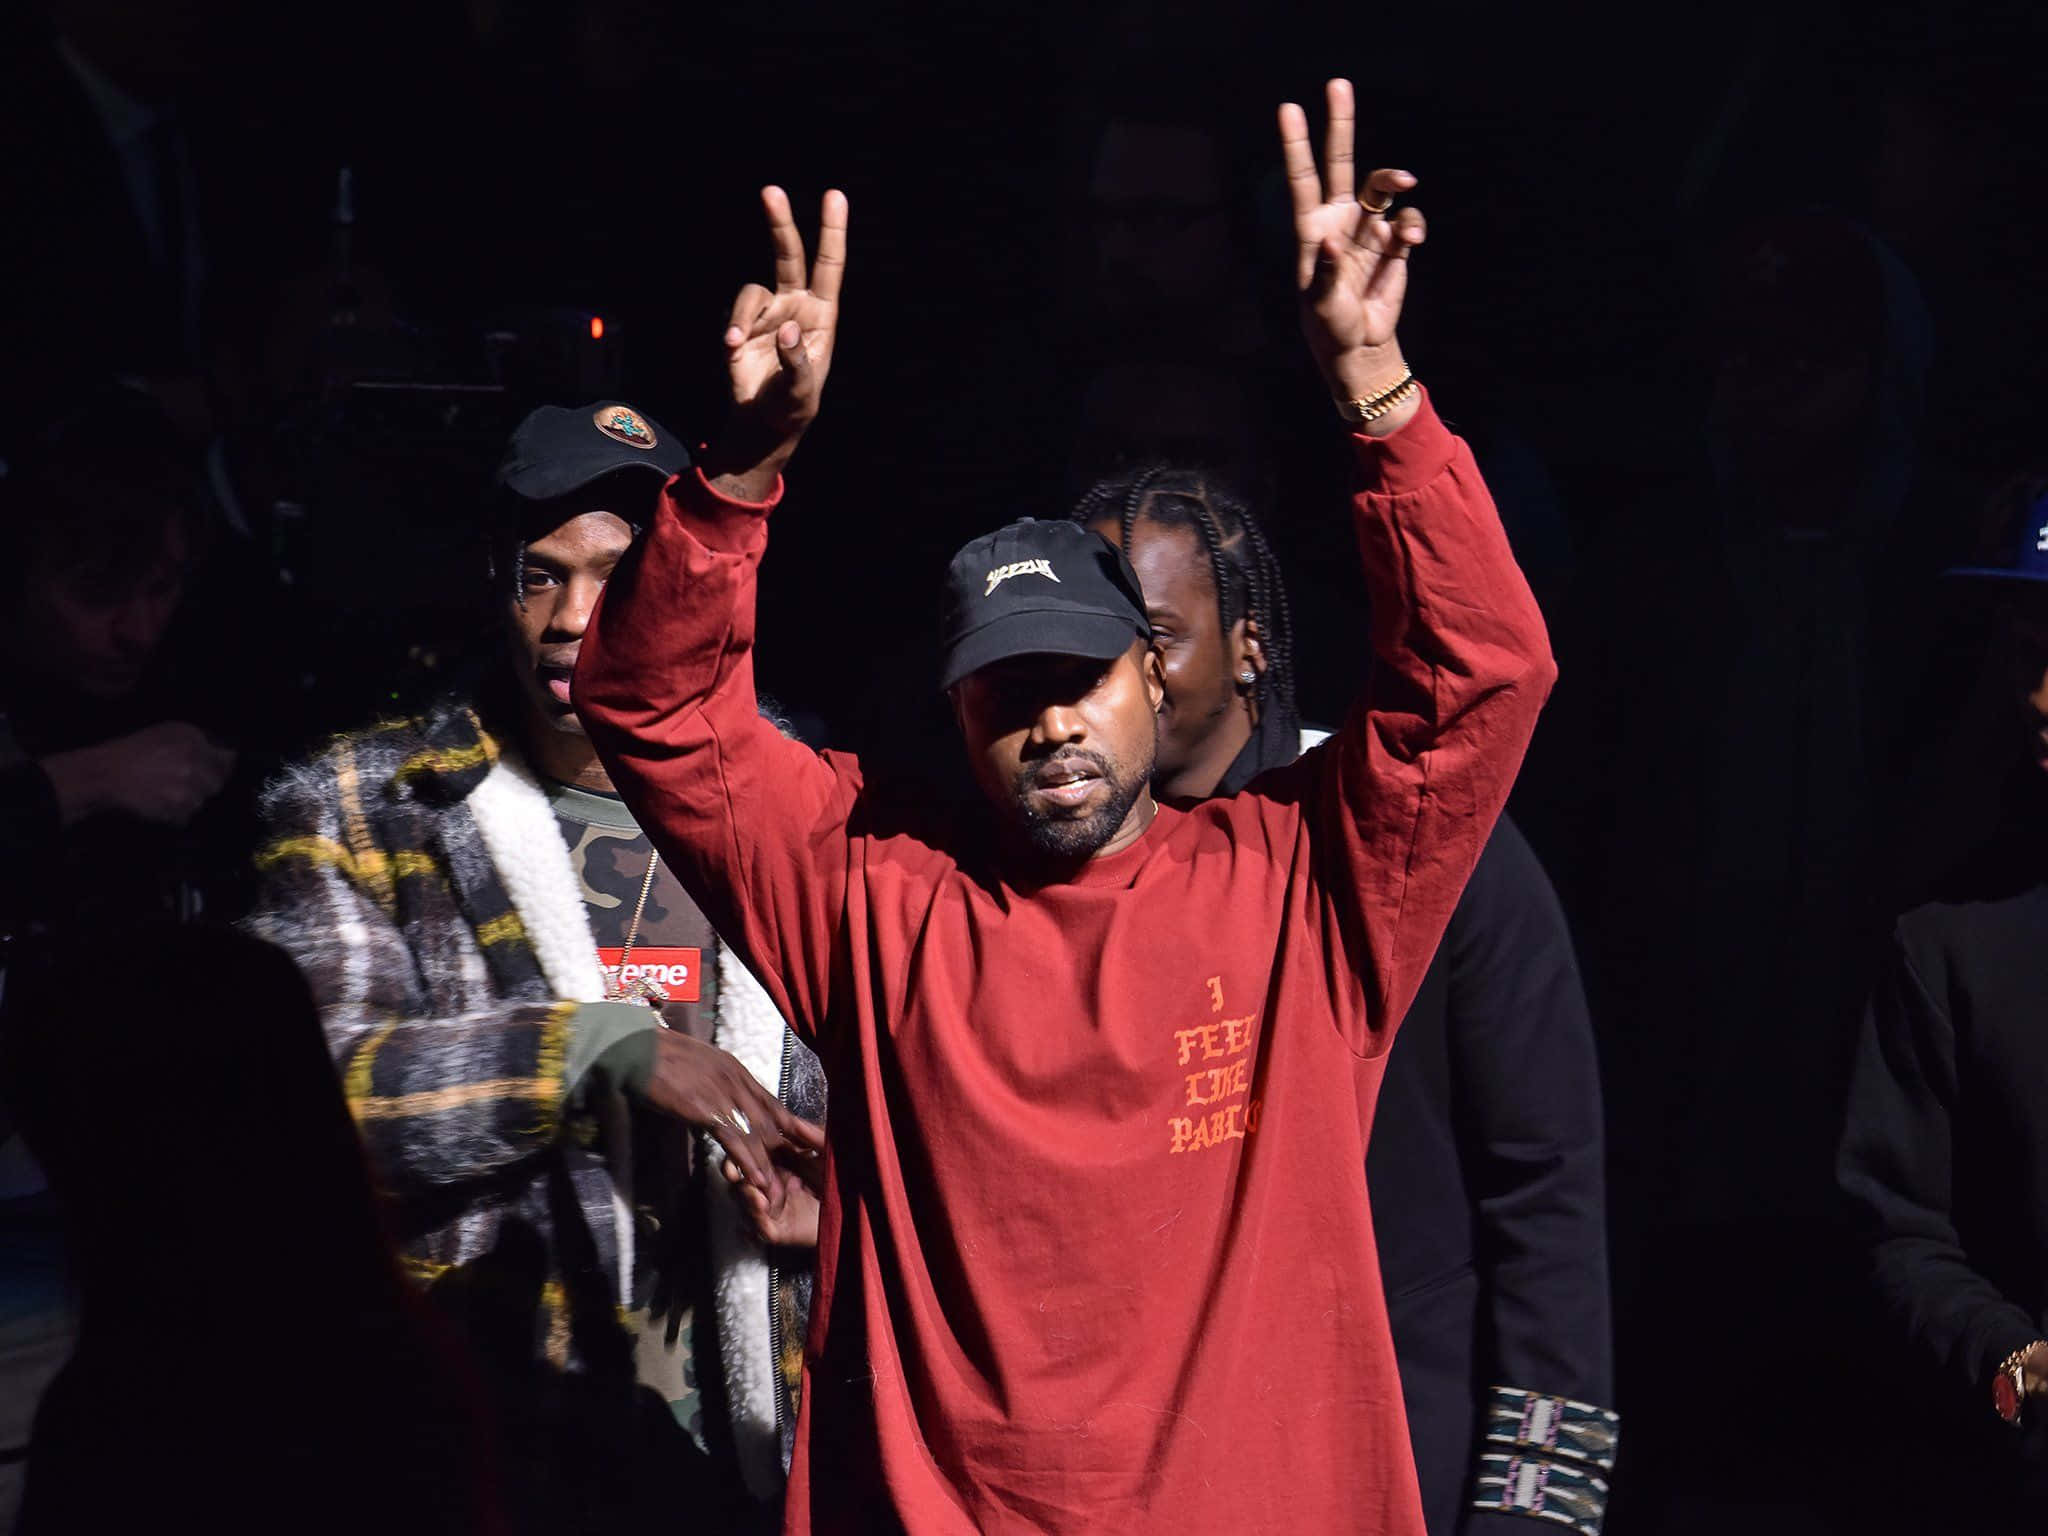 Kanye West Background